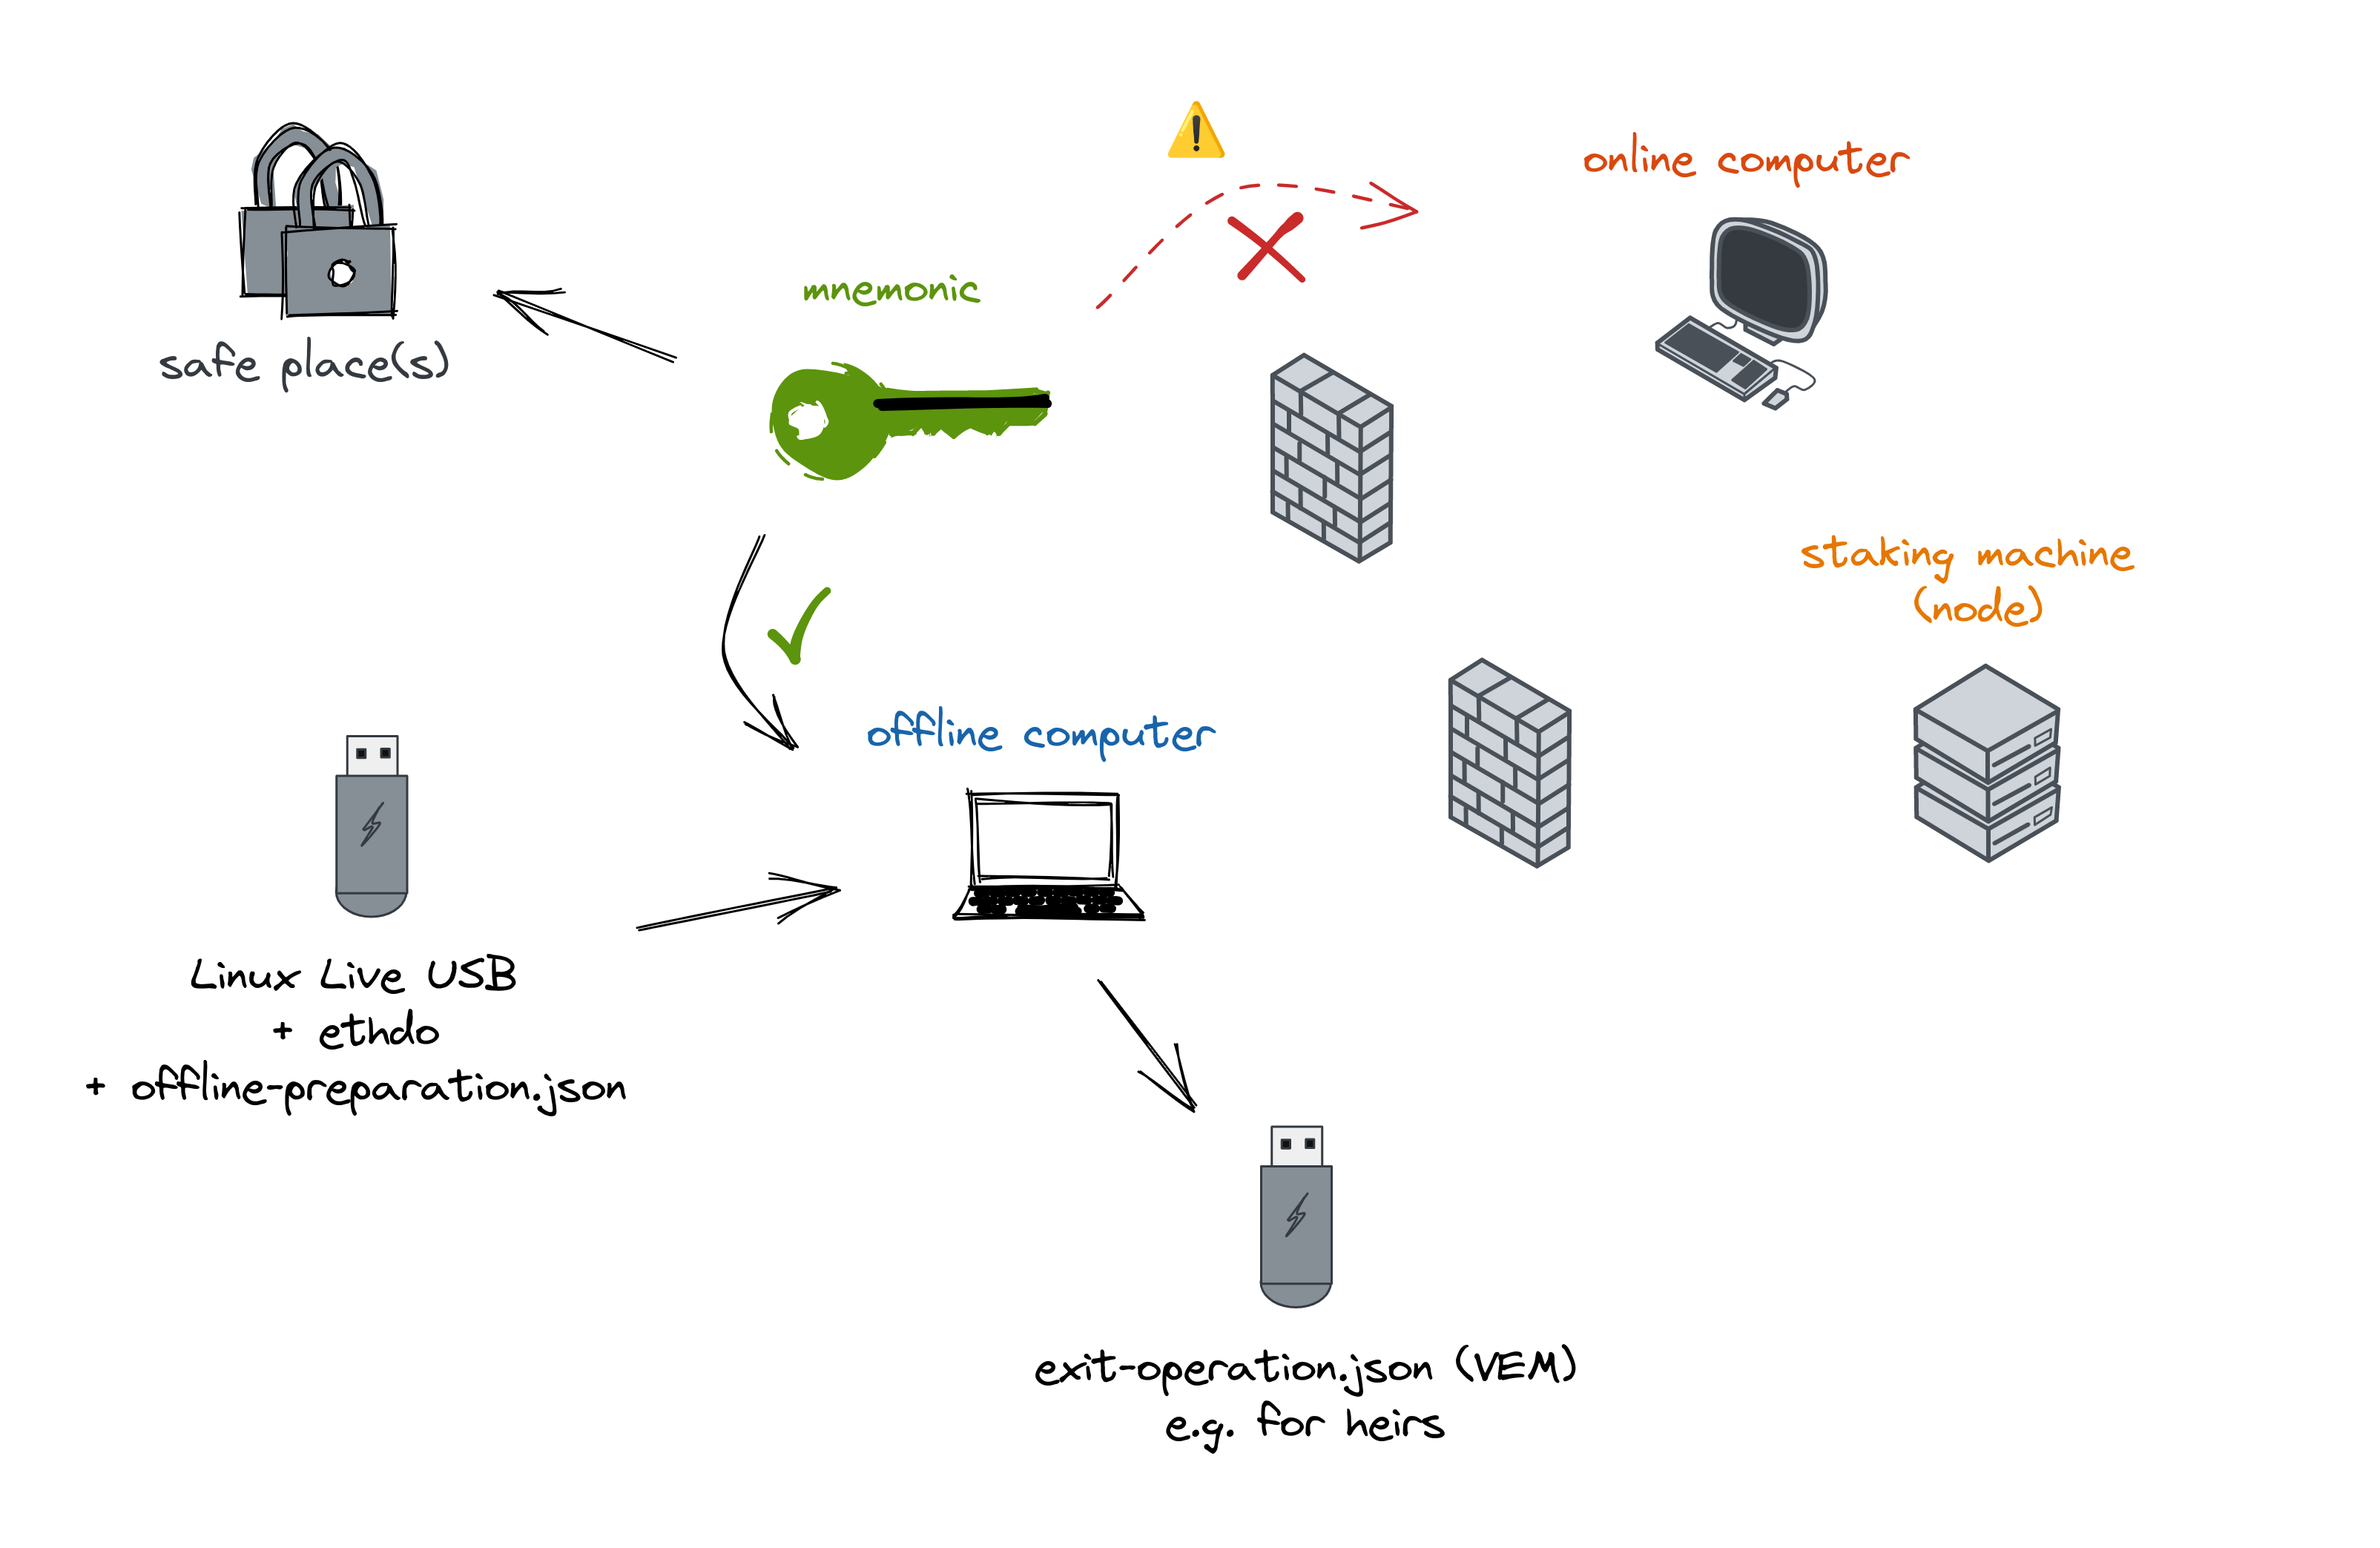 conceptual overview of an online+offline VEM generation setup